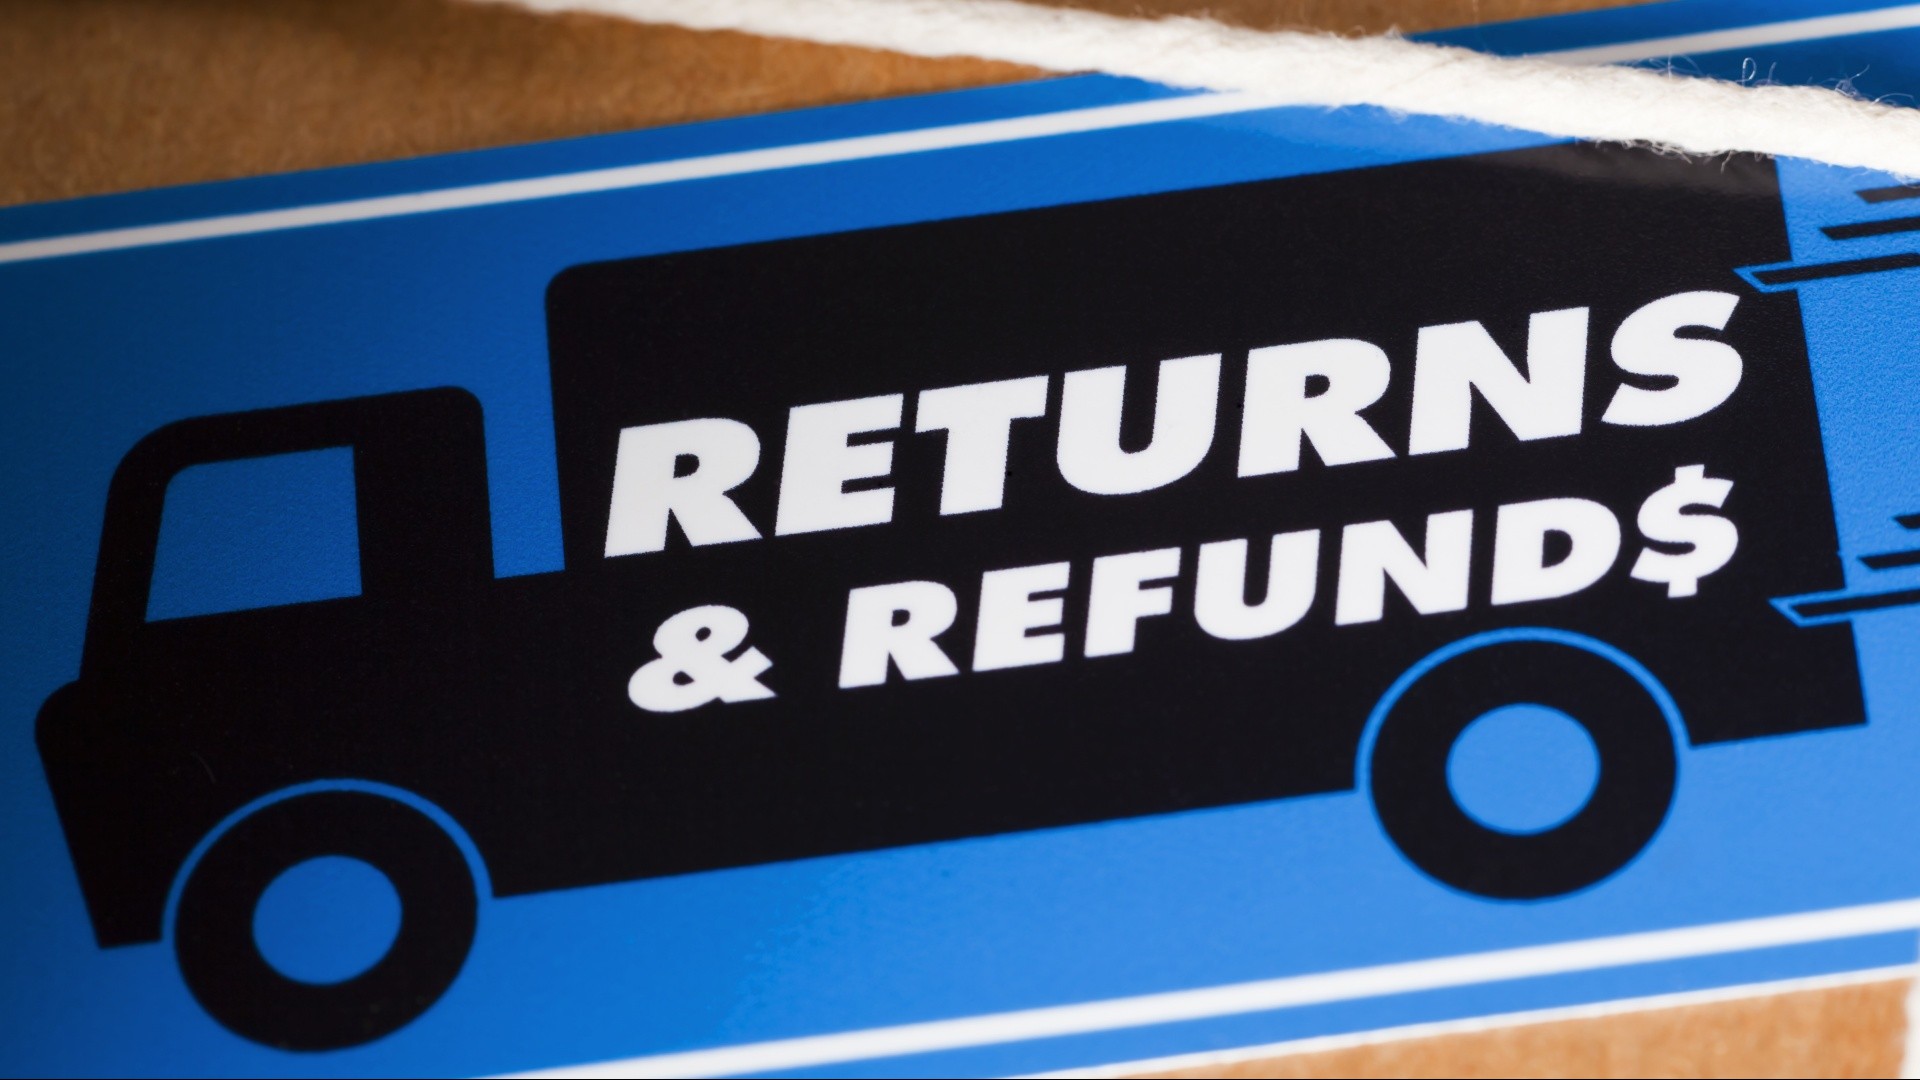 We can refund. Return and refund. Return Policy. Get a refund. Have a refund.